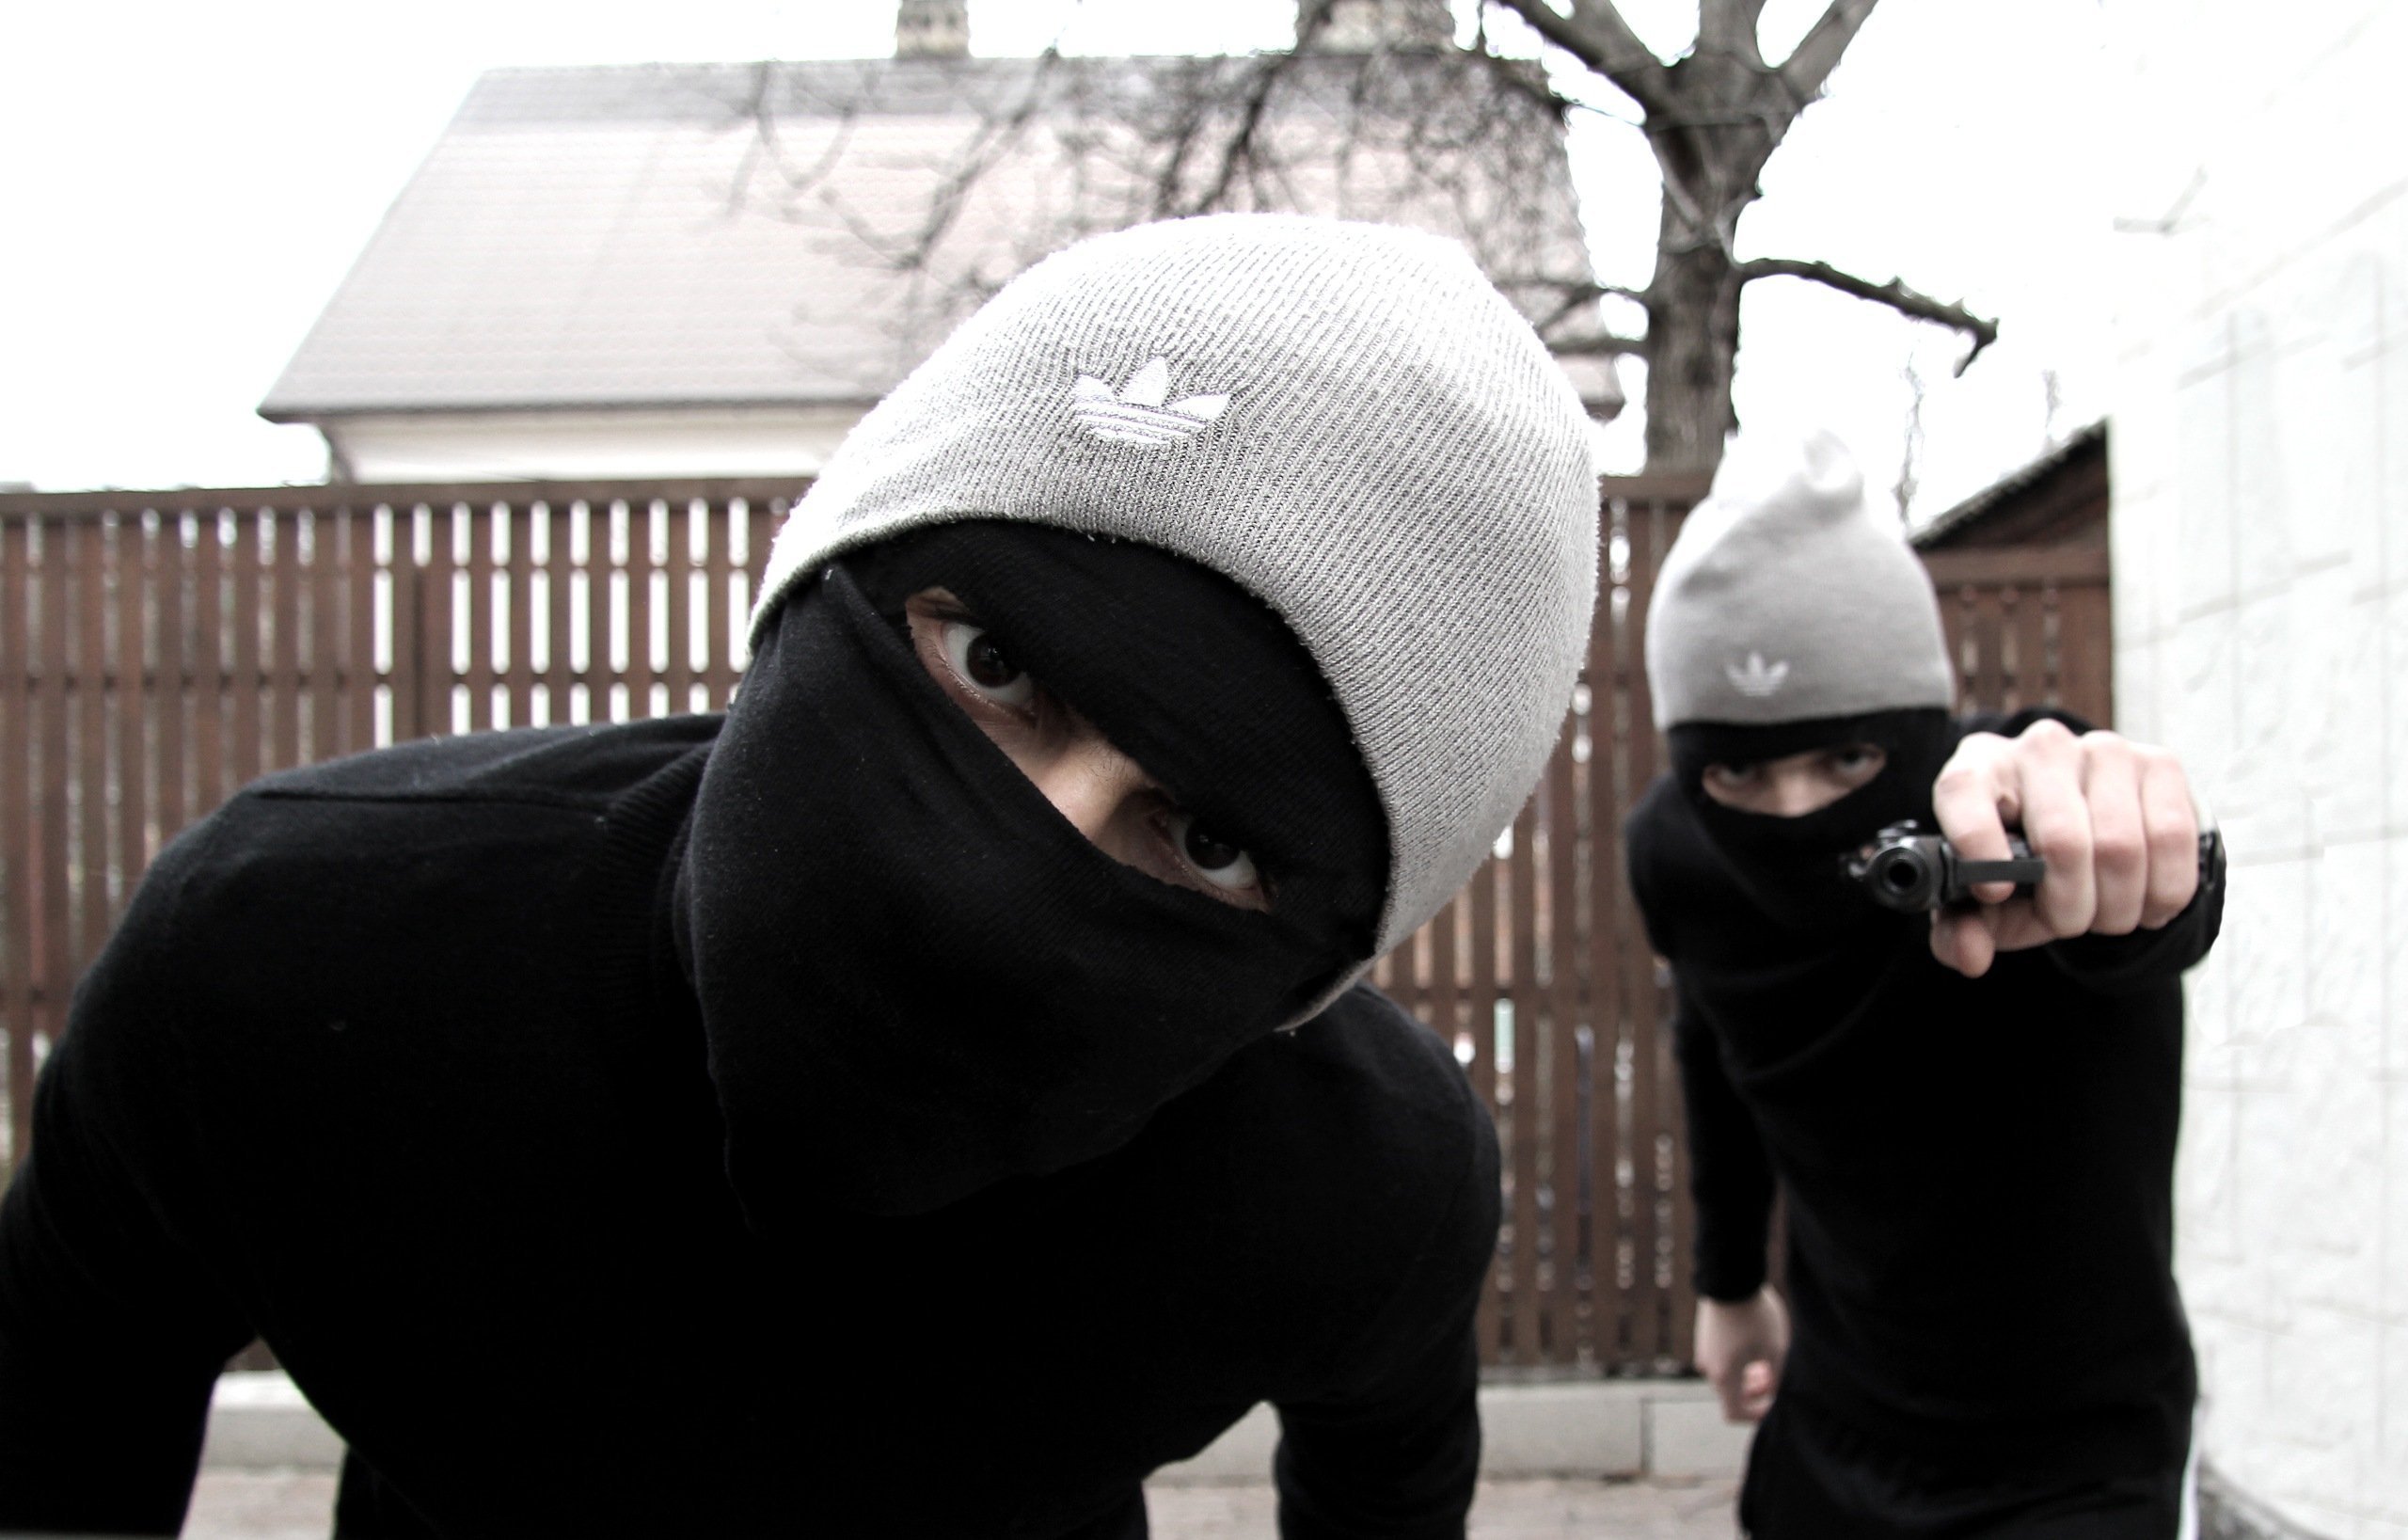 Включи видео хулиган. Бандиты в масках. Парень хулиган в маске. Хулиган бандит. Крутые бандиты в масках.